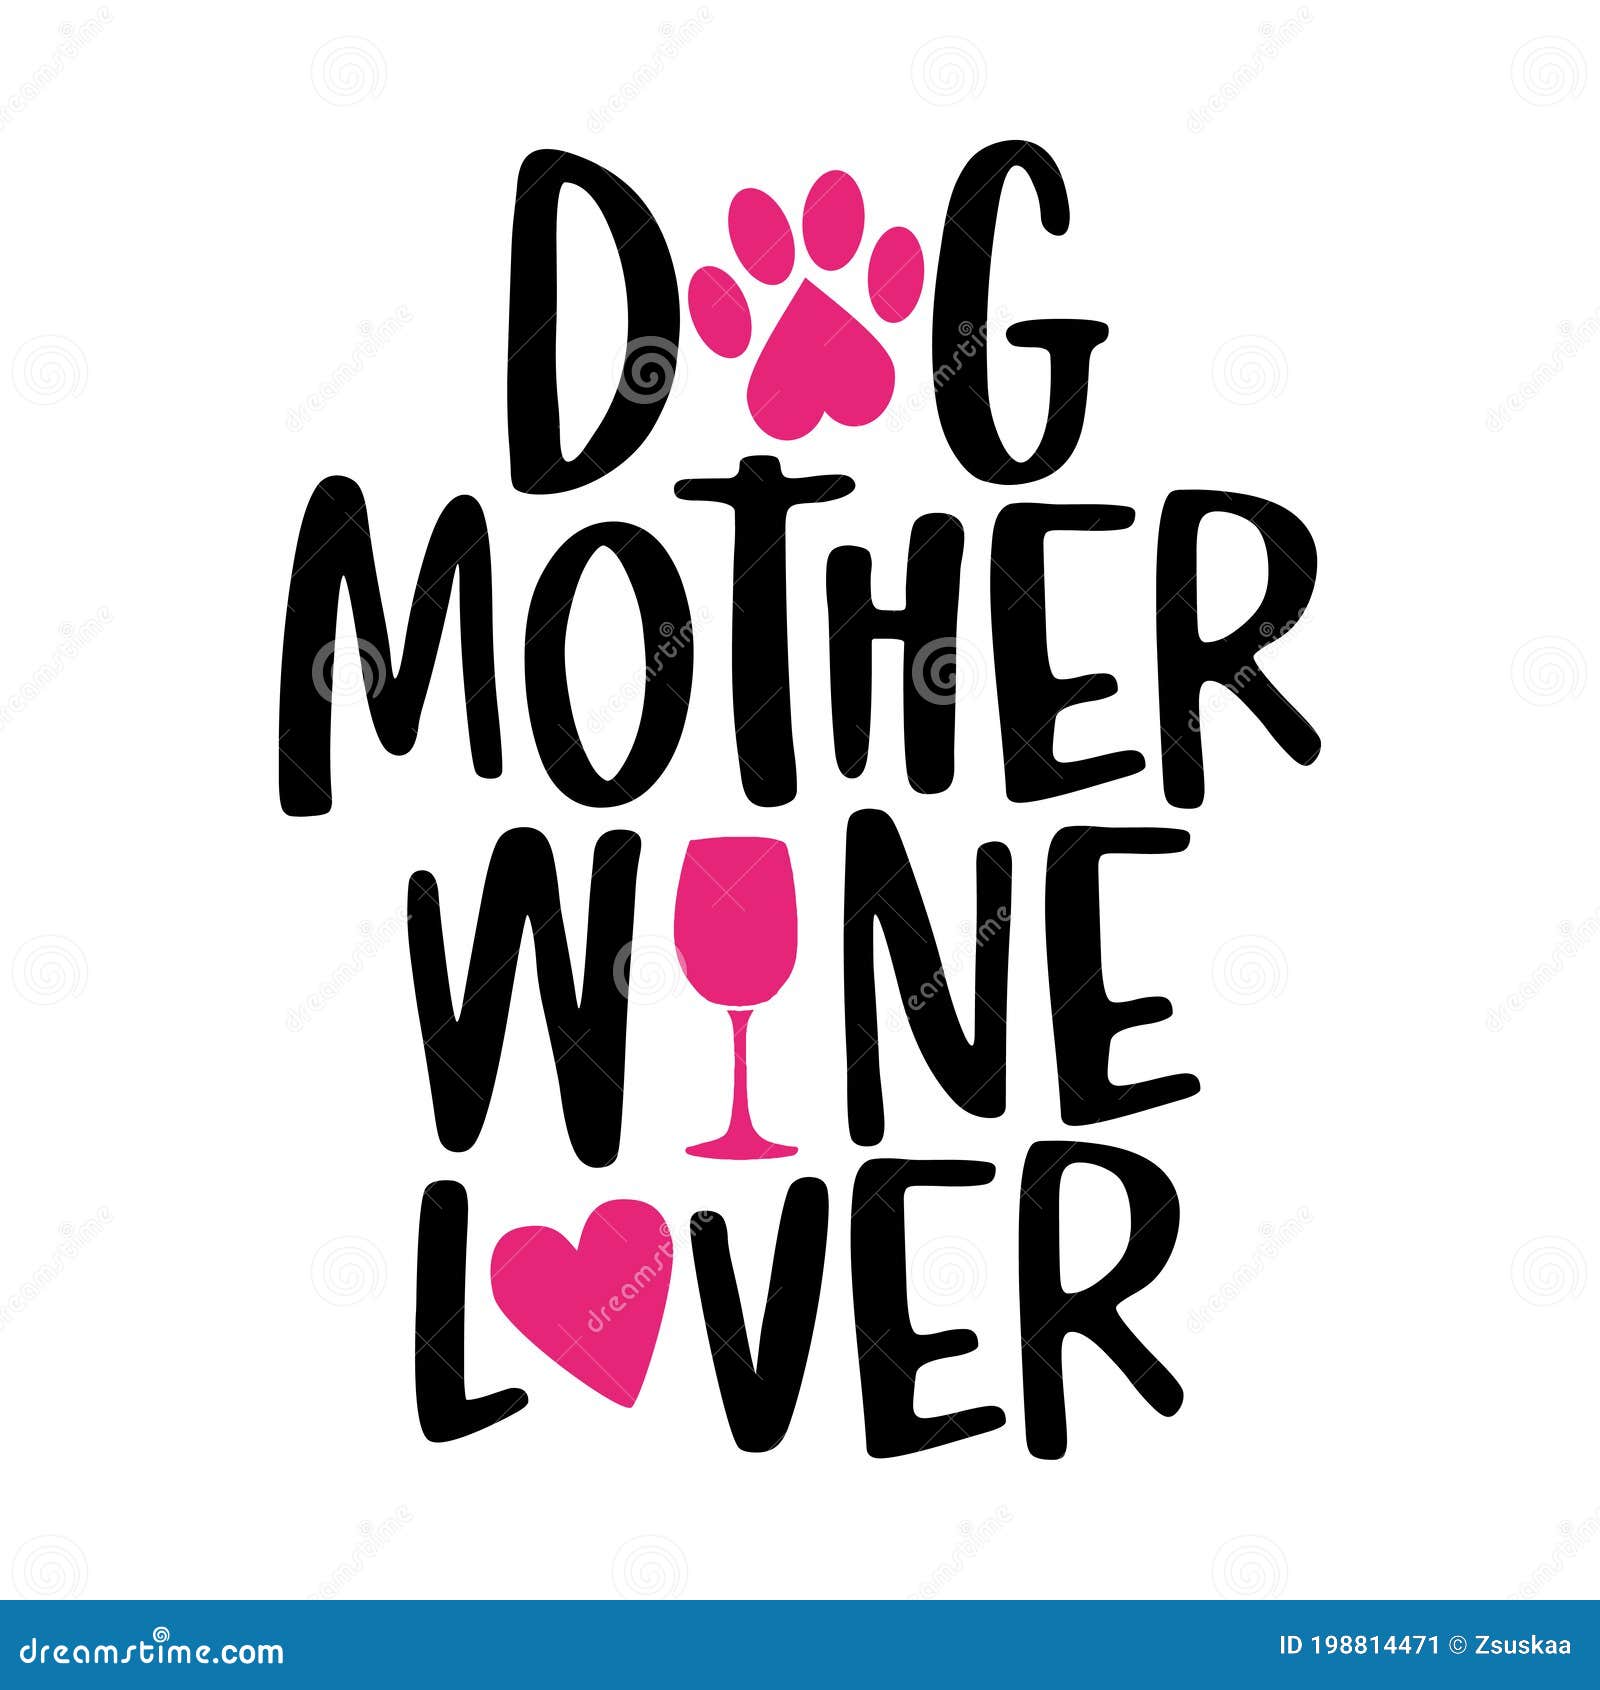 dog mother, wine lover